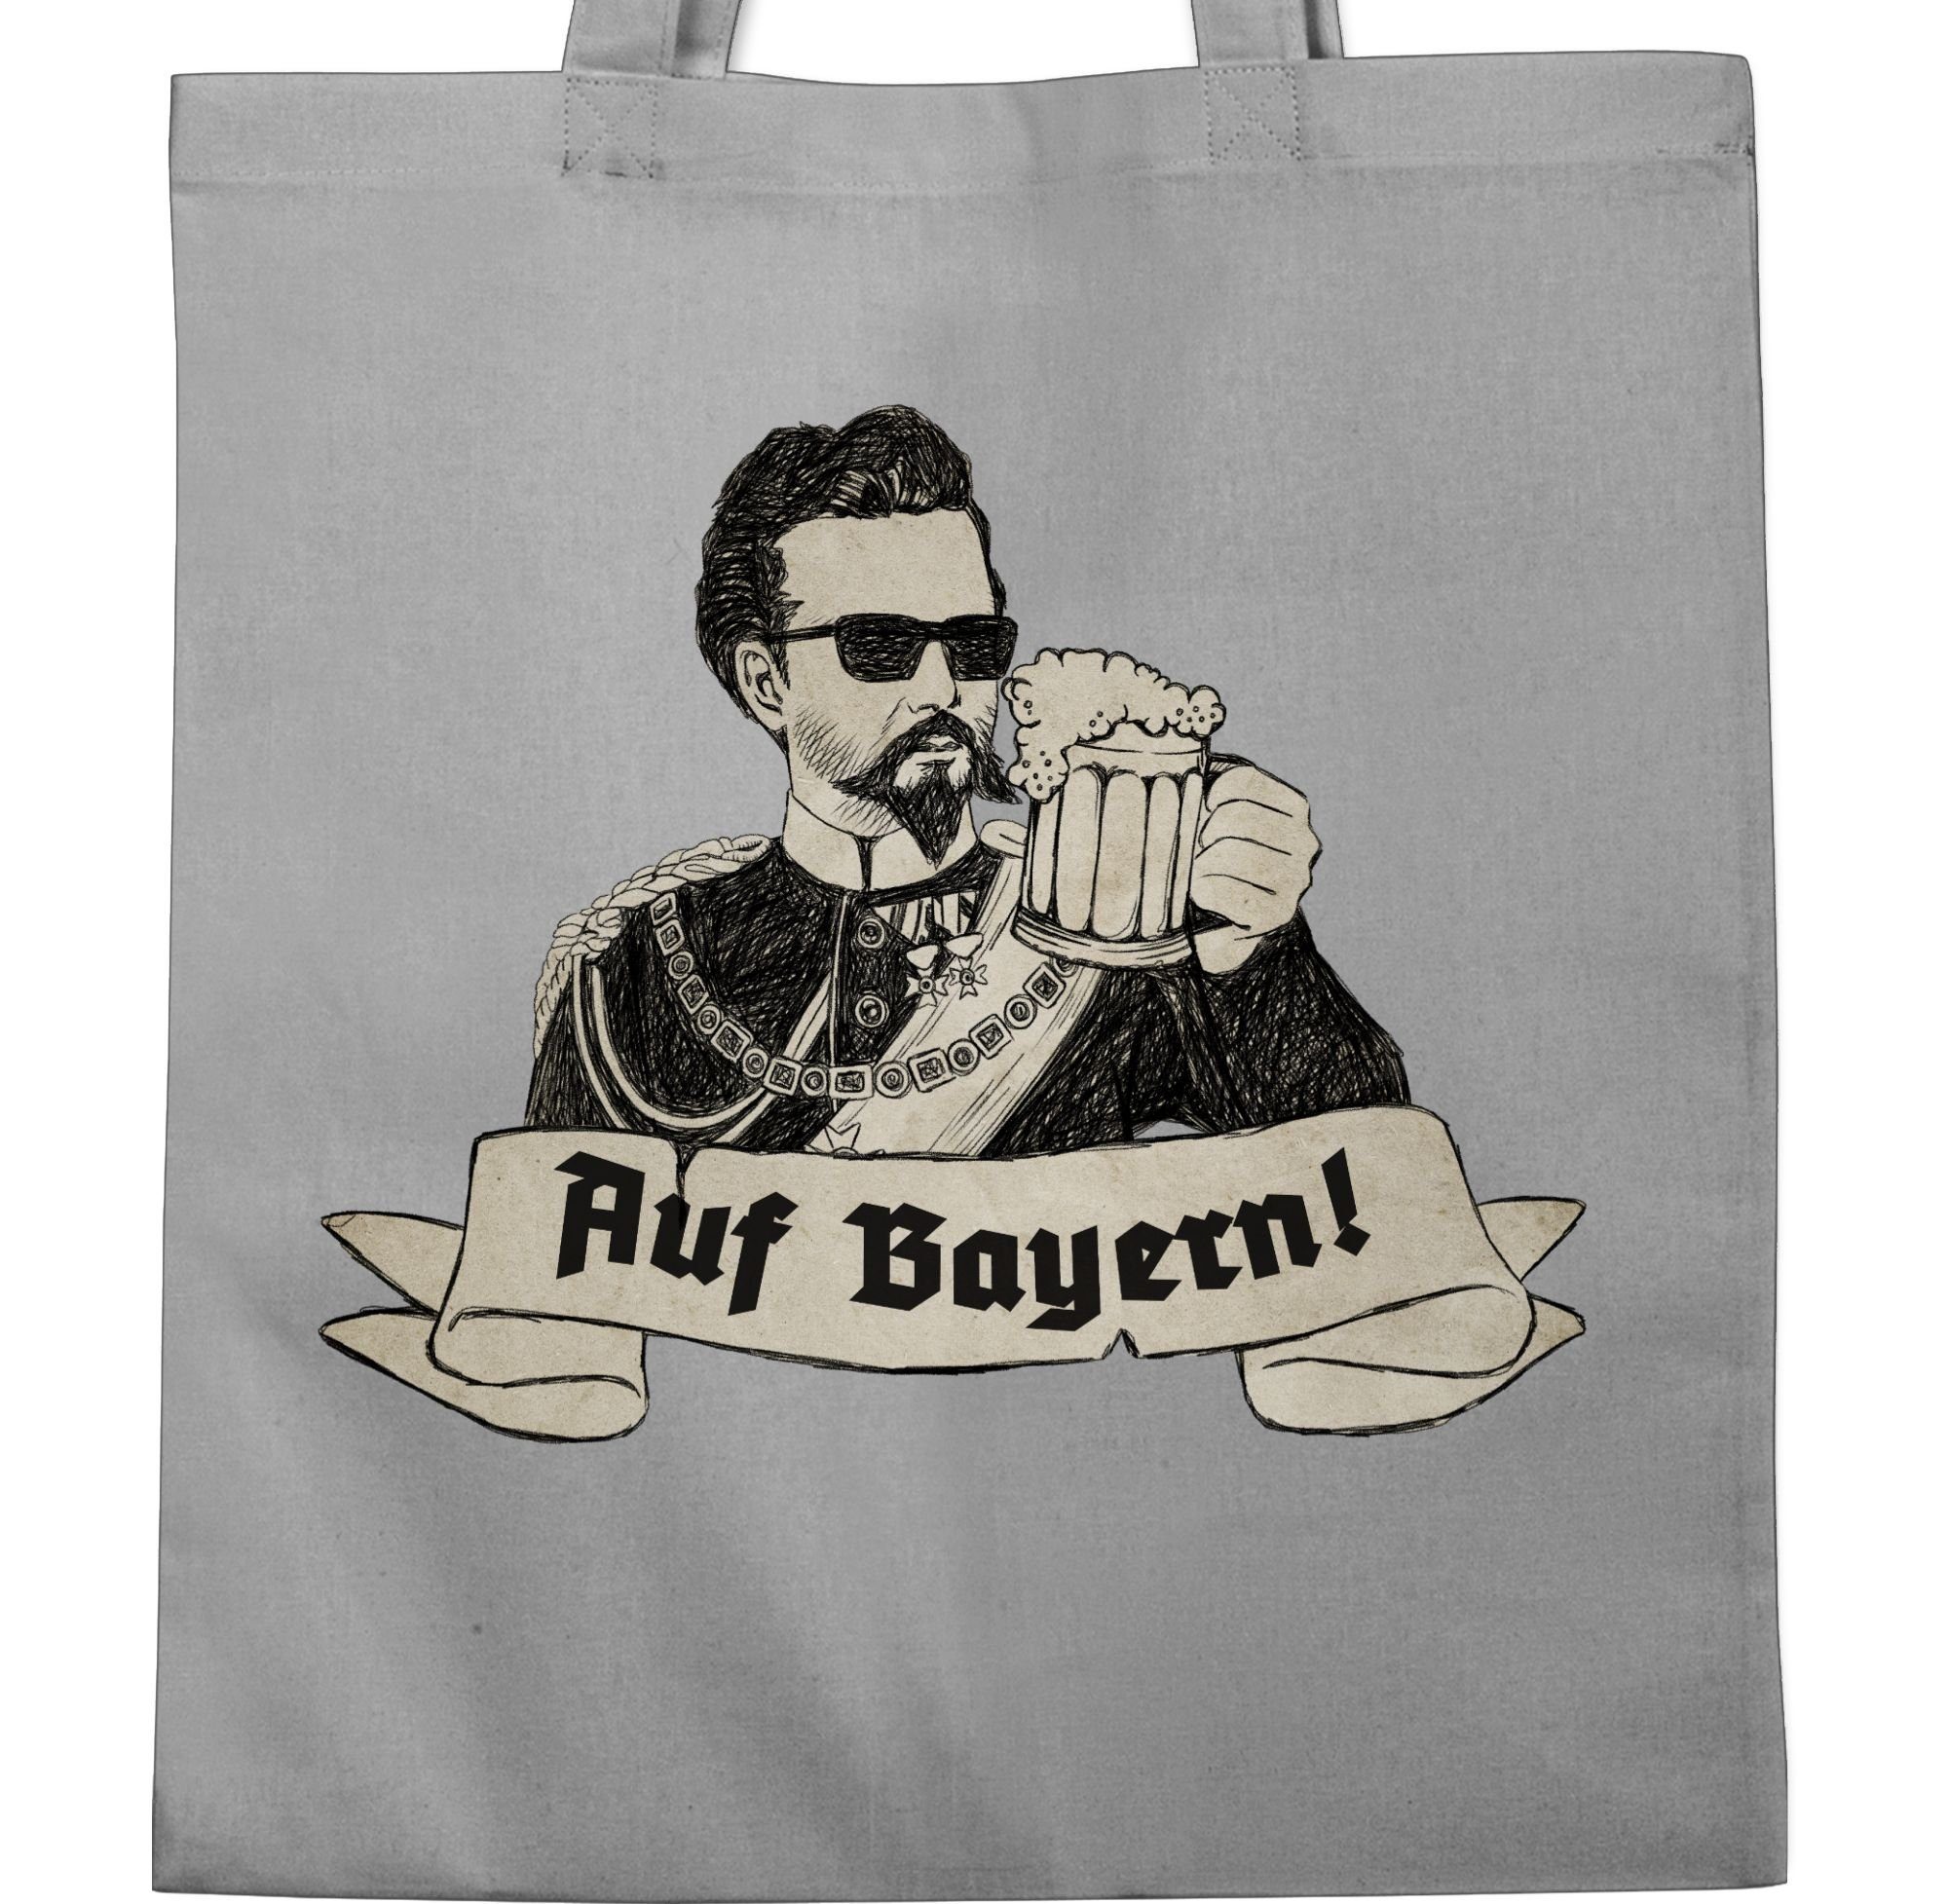 Ludwig Mode Bayern - Hellgrau Umhängetasche Tasche für 1 Prost, Oktoberfest Shirtracer Auf Bayern König